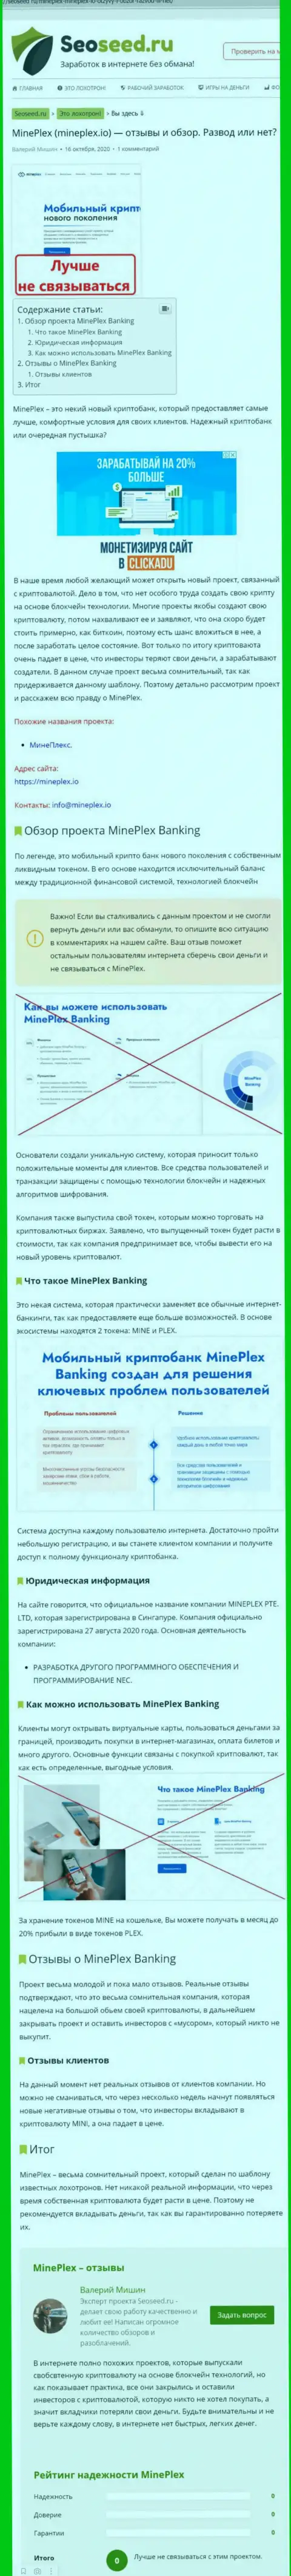 С MinePlex Io не сможете заработать !!! Денежные активы присваивают  - это МОШЕННИКИ ! (статья с разбором)